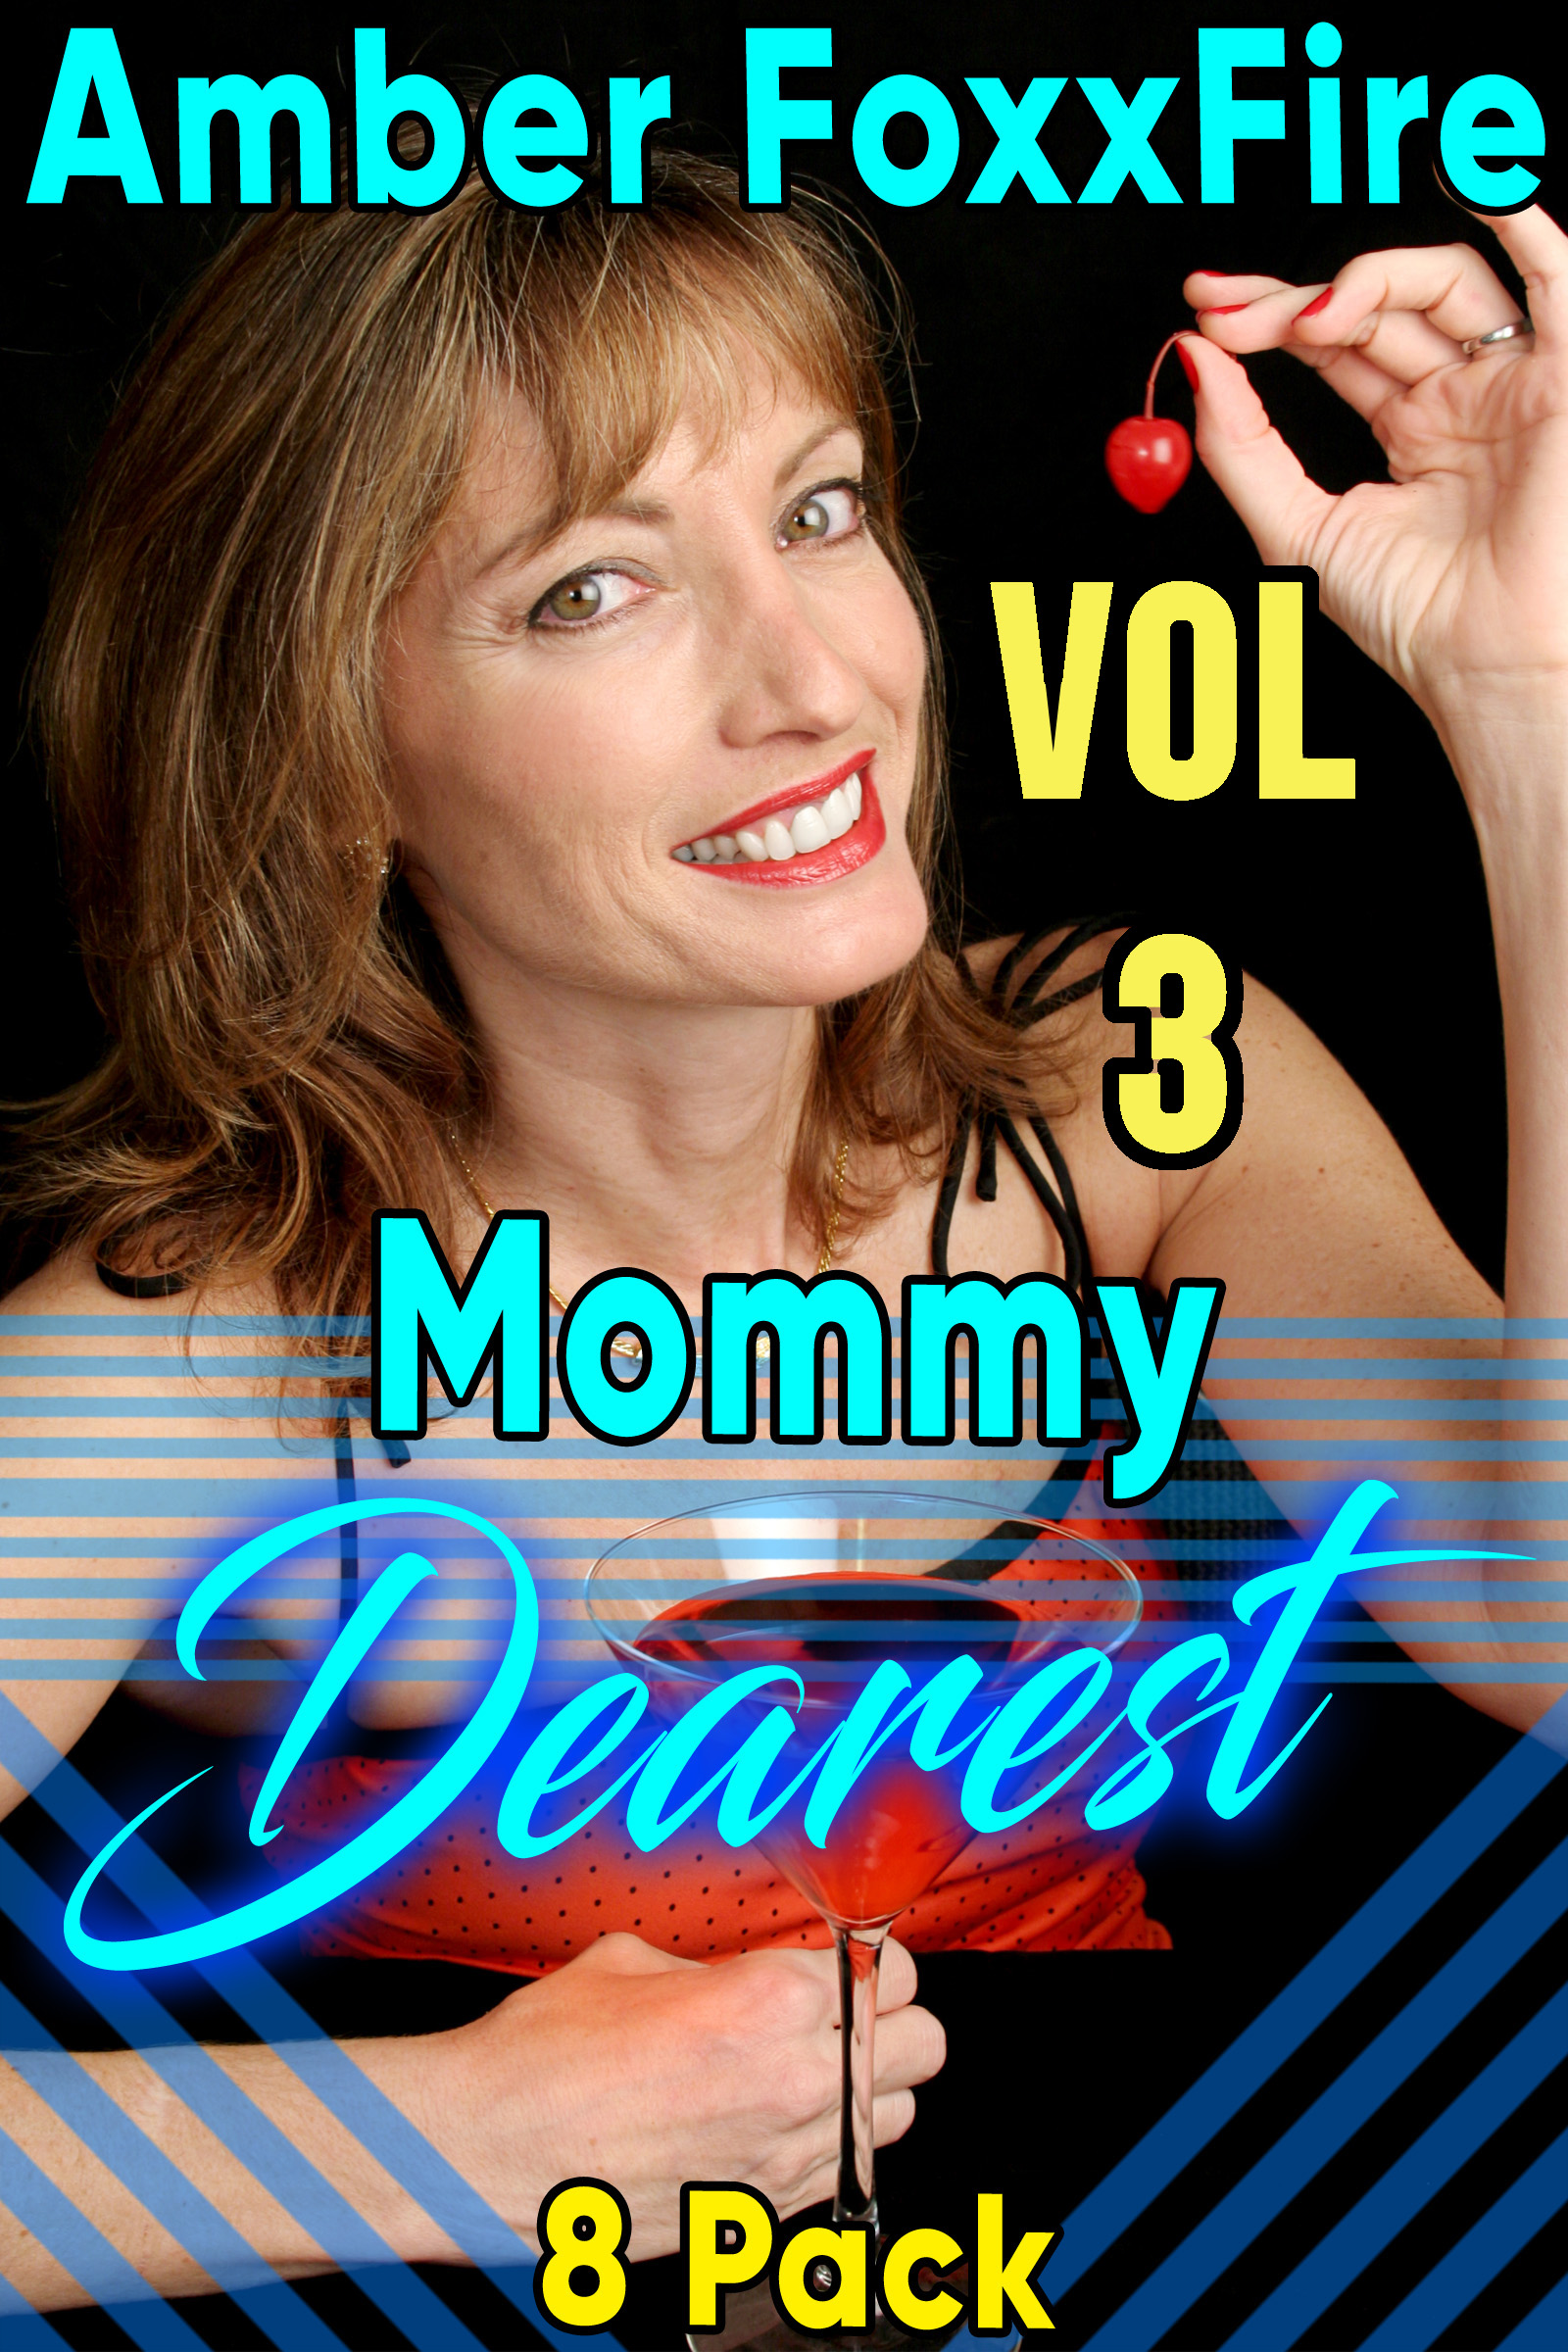 Mommy Dearest 8-Pack Vol 3, an Ebook by Amber FoxxFire.